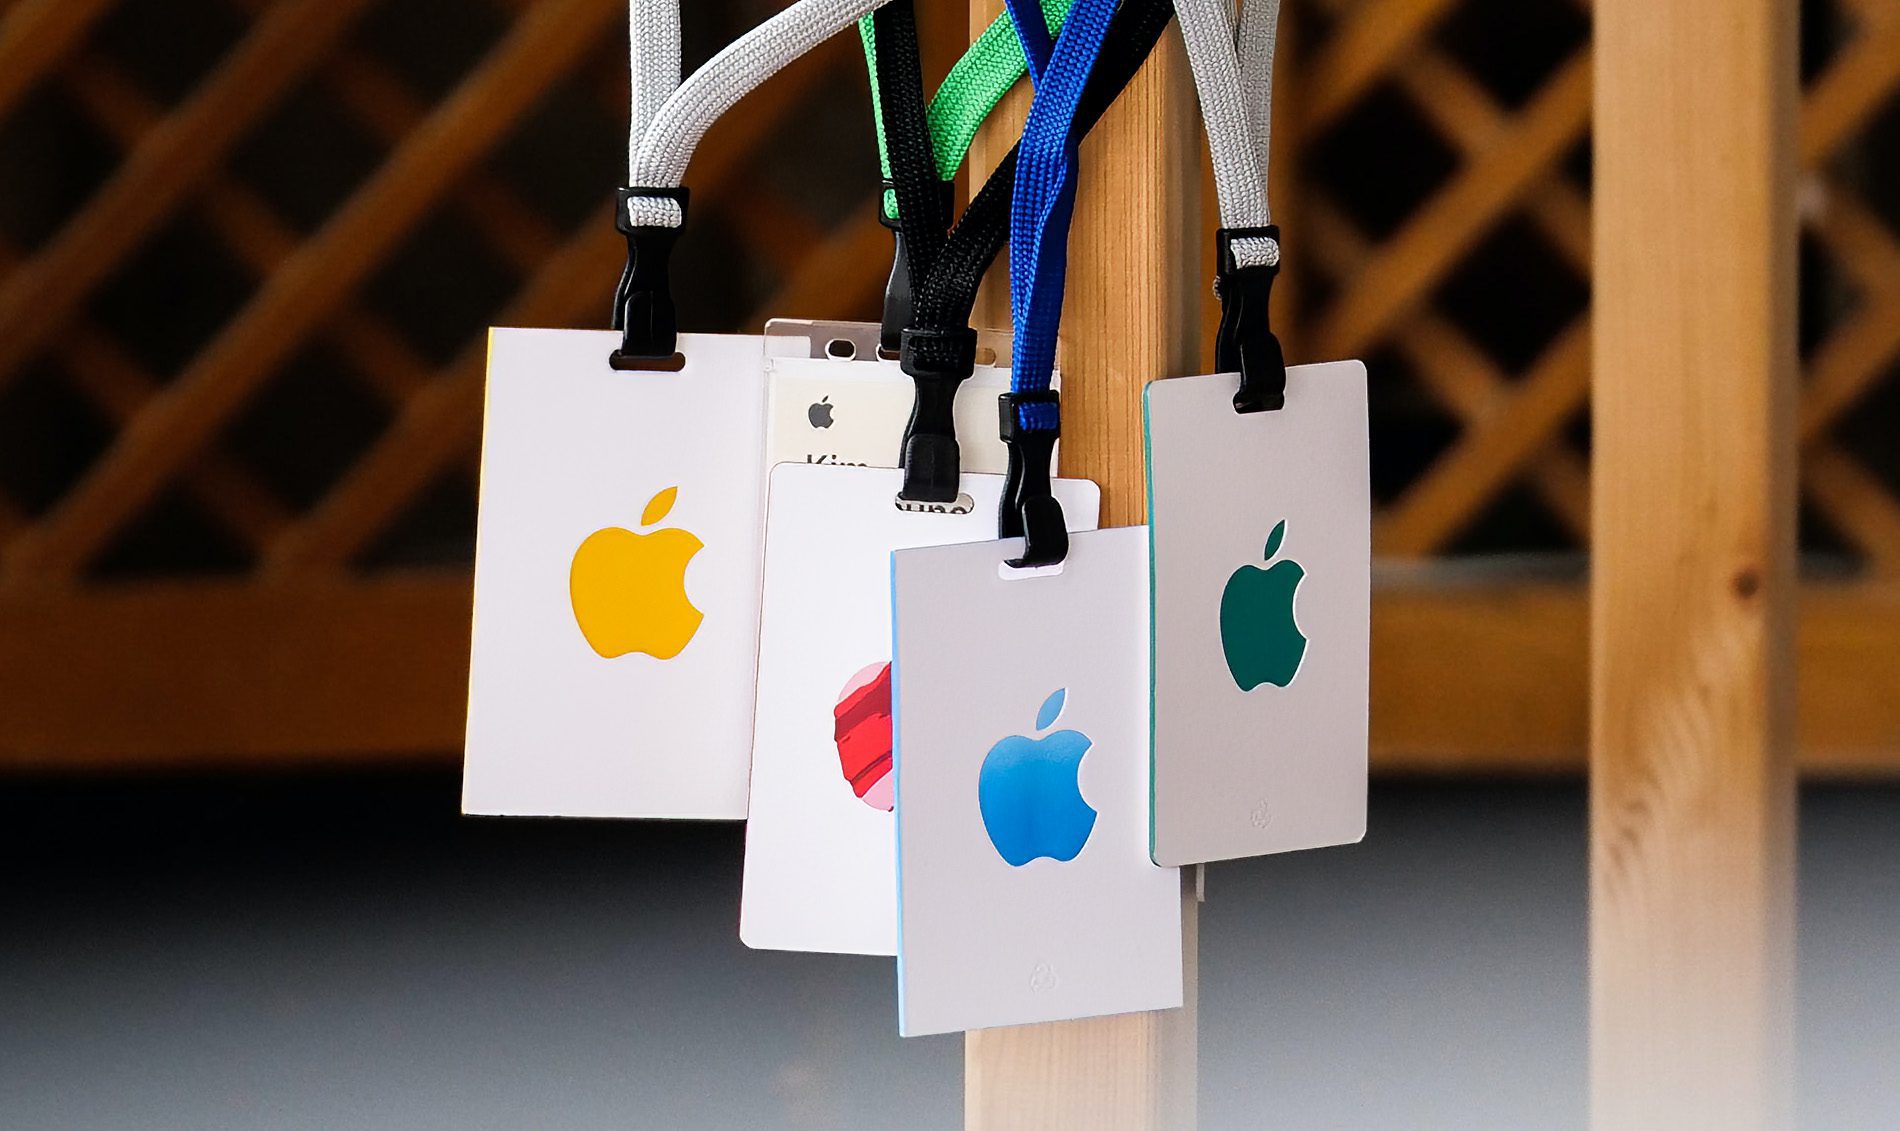 Apple Veranstaltungen sind bei Apple Fans immer wichtige Termine, da dort neue Hardware und Software zur Verfügung gestellt wird.